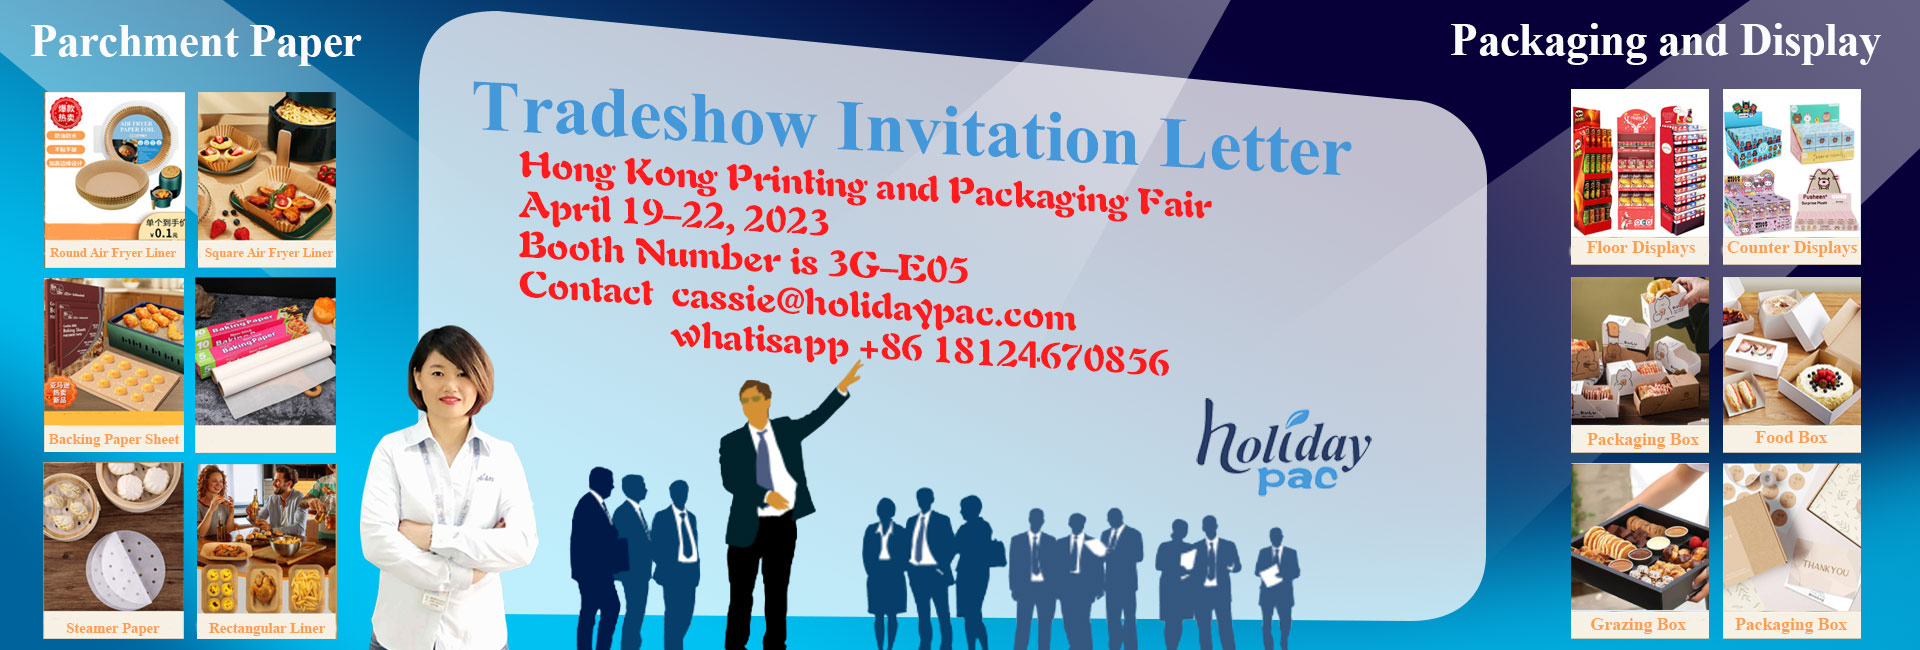 Hong Kong Printing and Packaging Fair